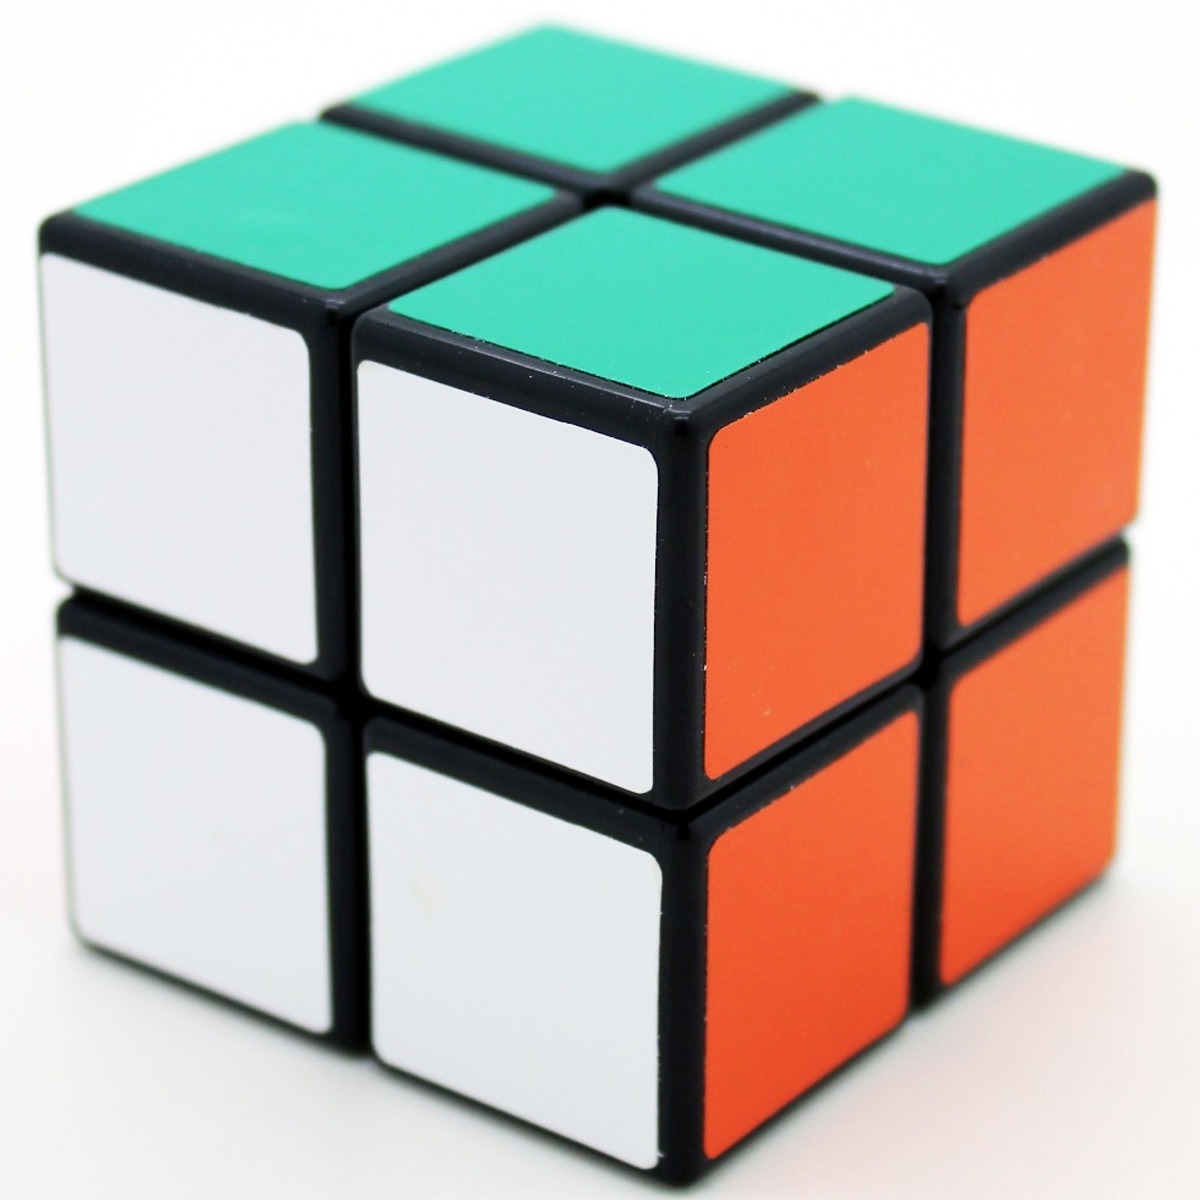 Could cube. Кубик Рубика 2х2х4. Кубик рубик 2x2. 2x2 Rubiks Cube. Кубик;Рубика 2 2x2.